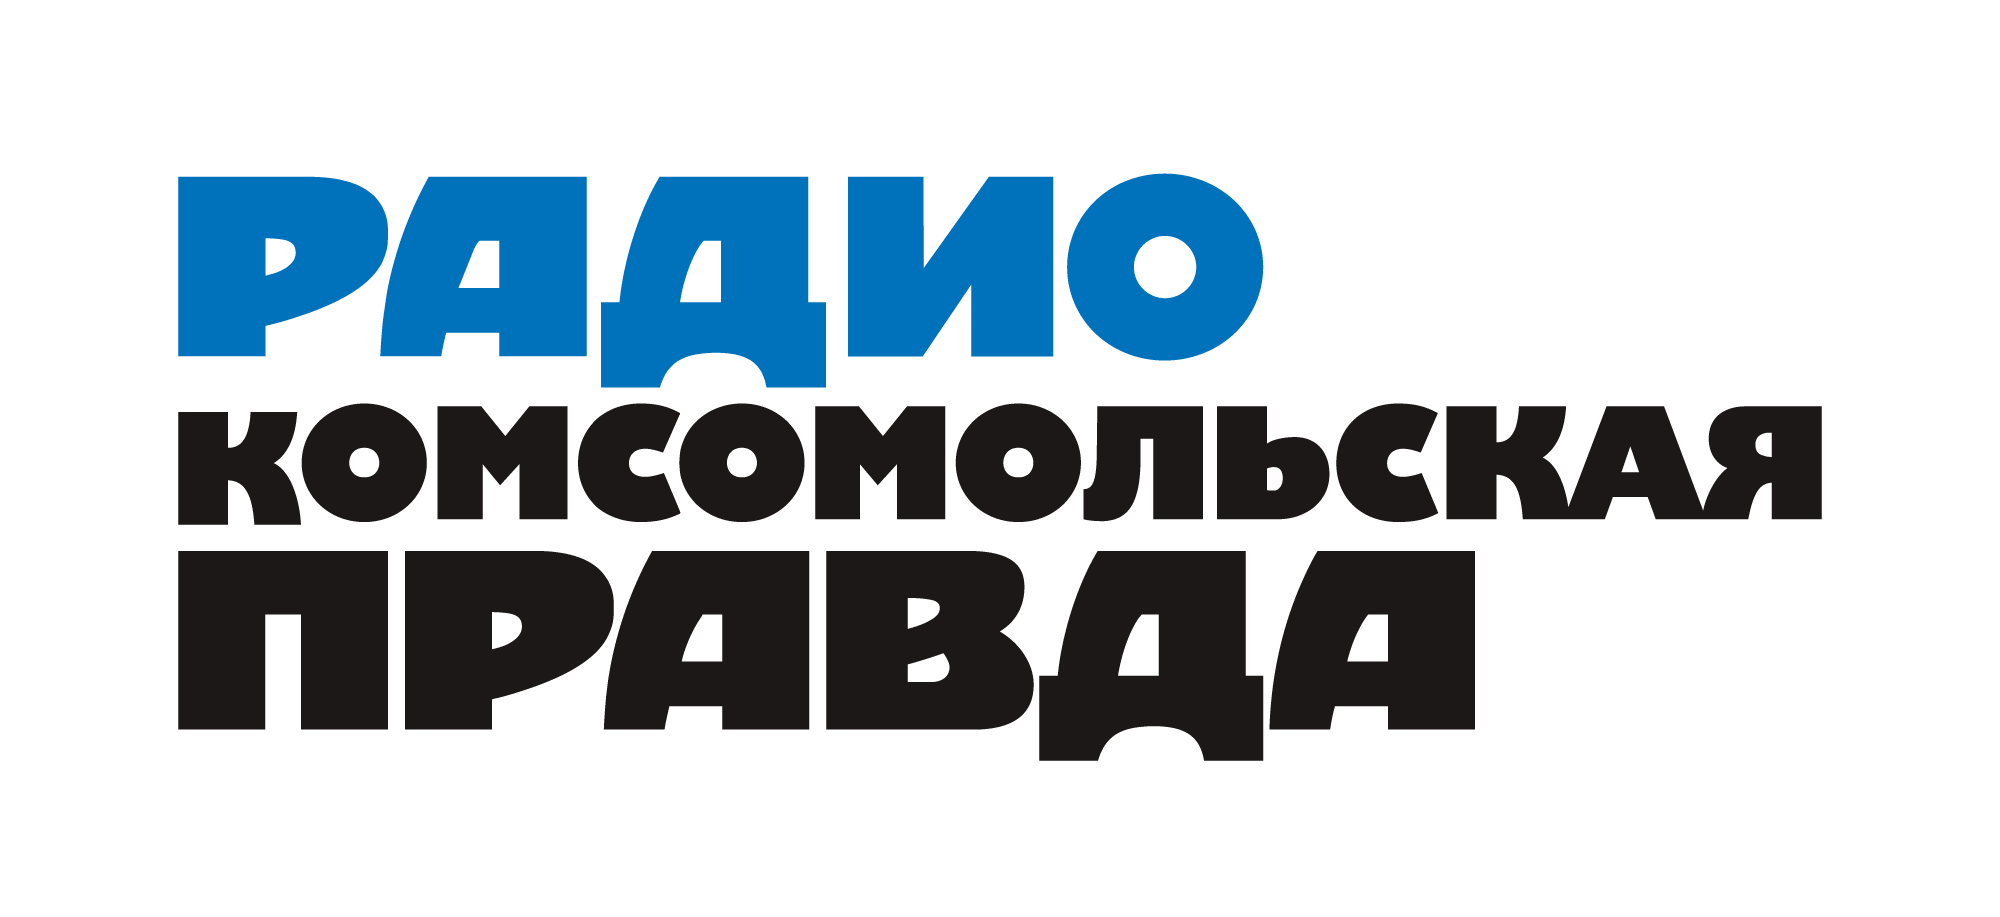 Комсомольская правда, радио, общероссийское вещание